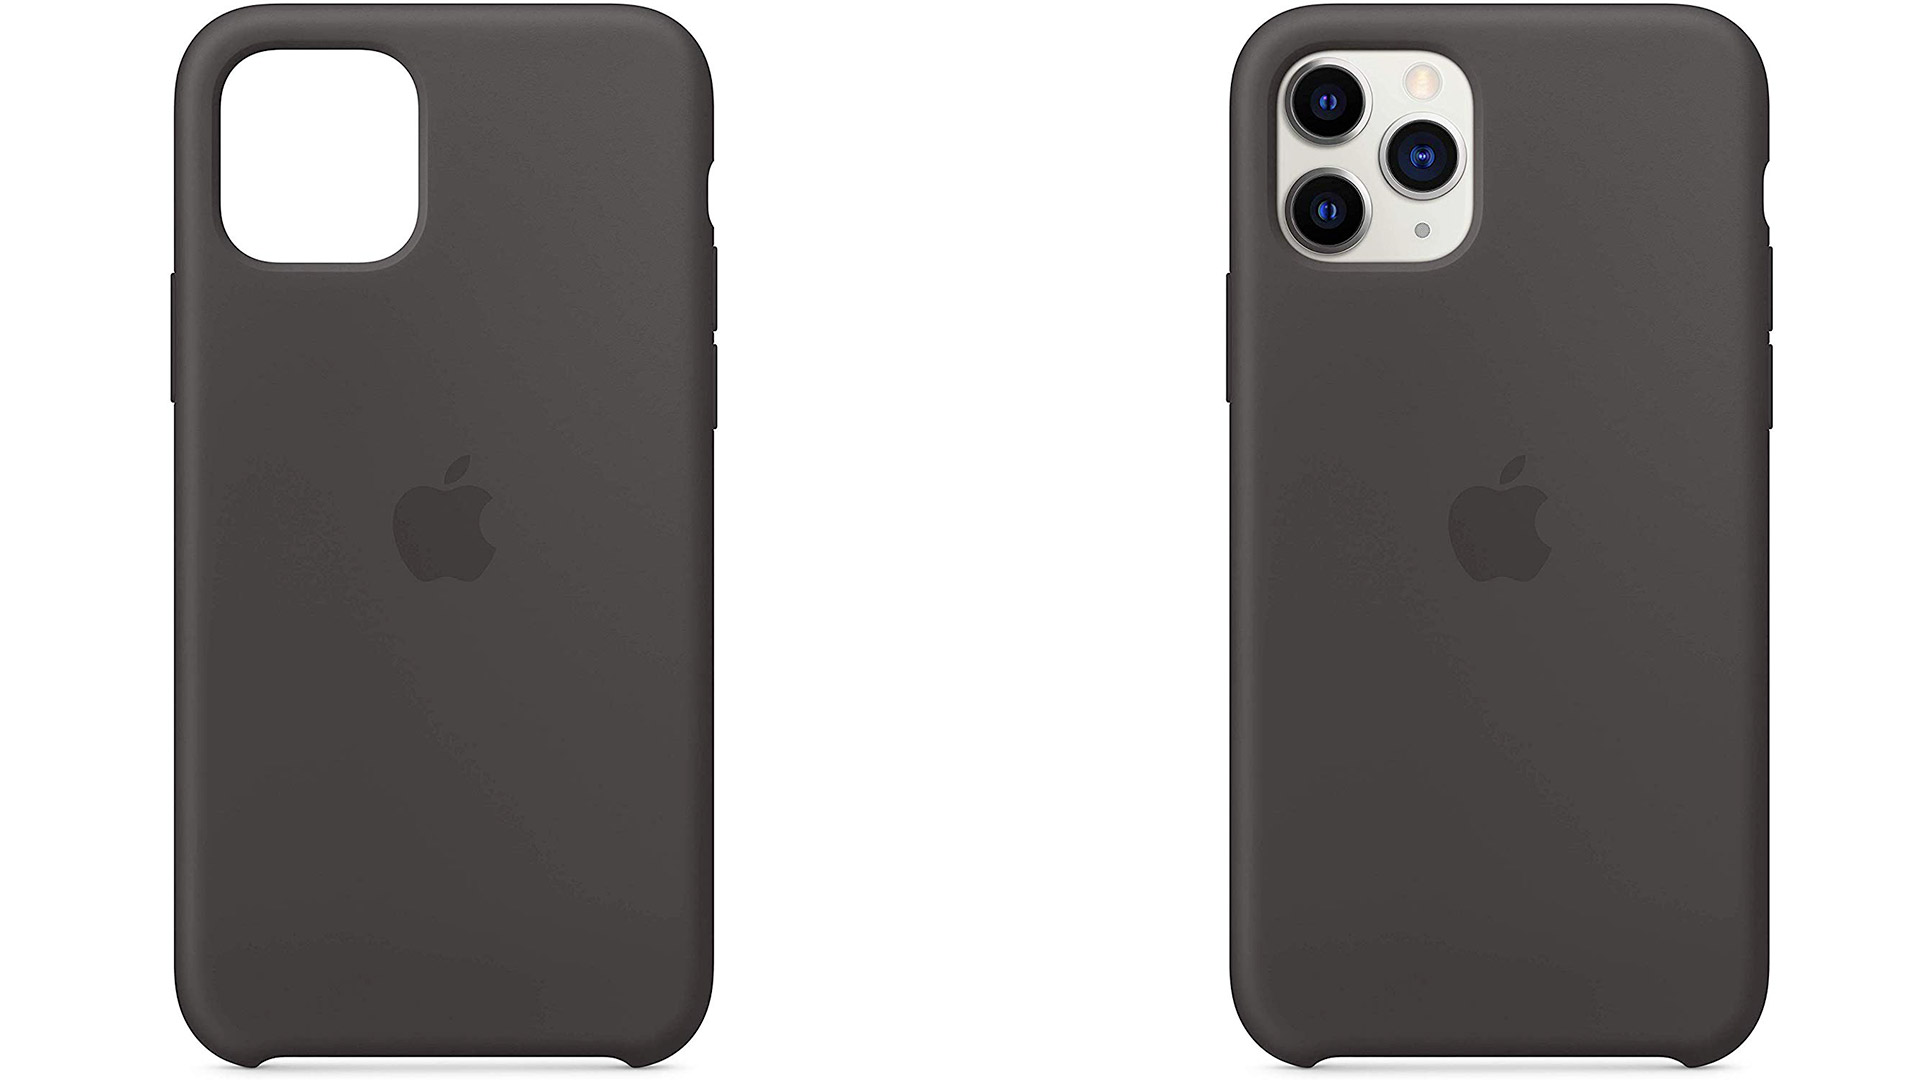 Custodia in silicone per iPhone 11 - Nero - Apple (IT)